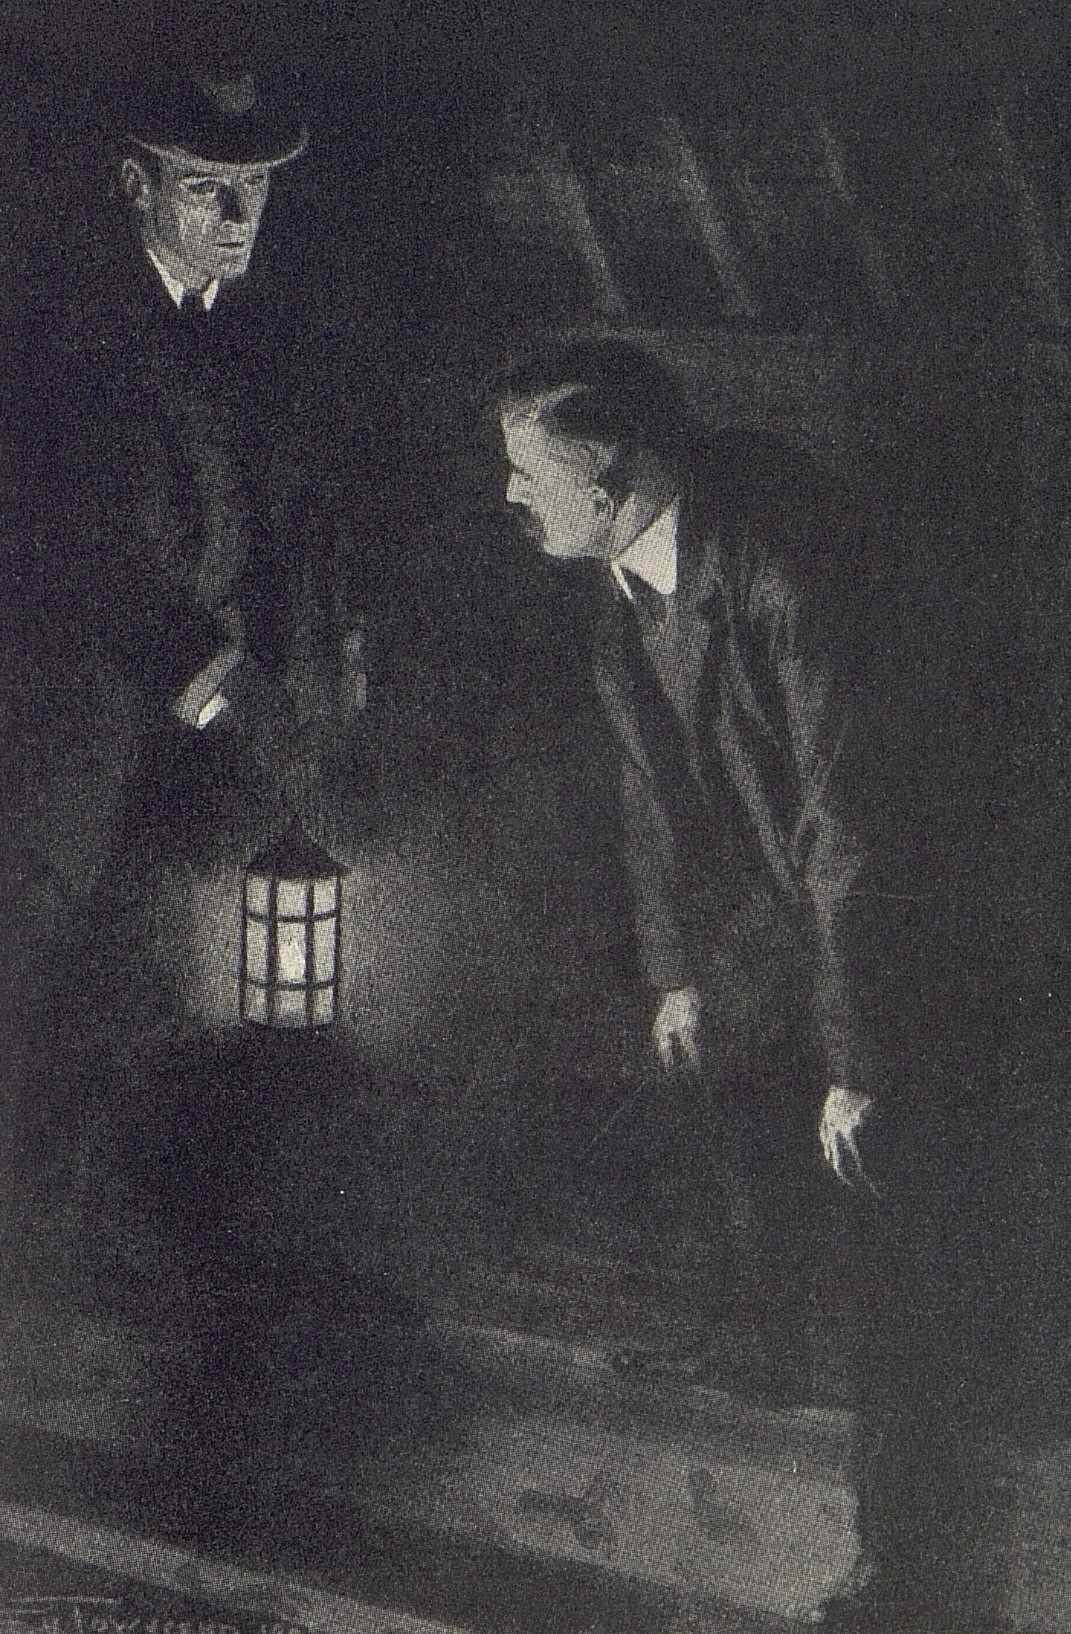 Mörkt rum. Holmes till vänster med tänd lykta i handen, Watson till höger lätt nerböjd. 